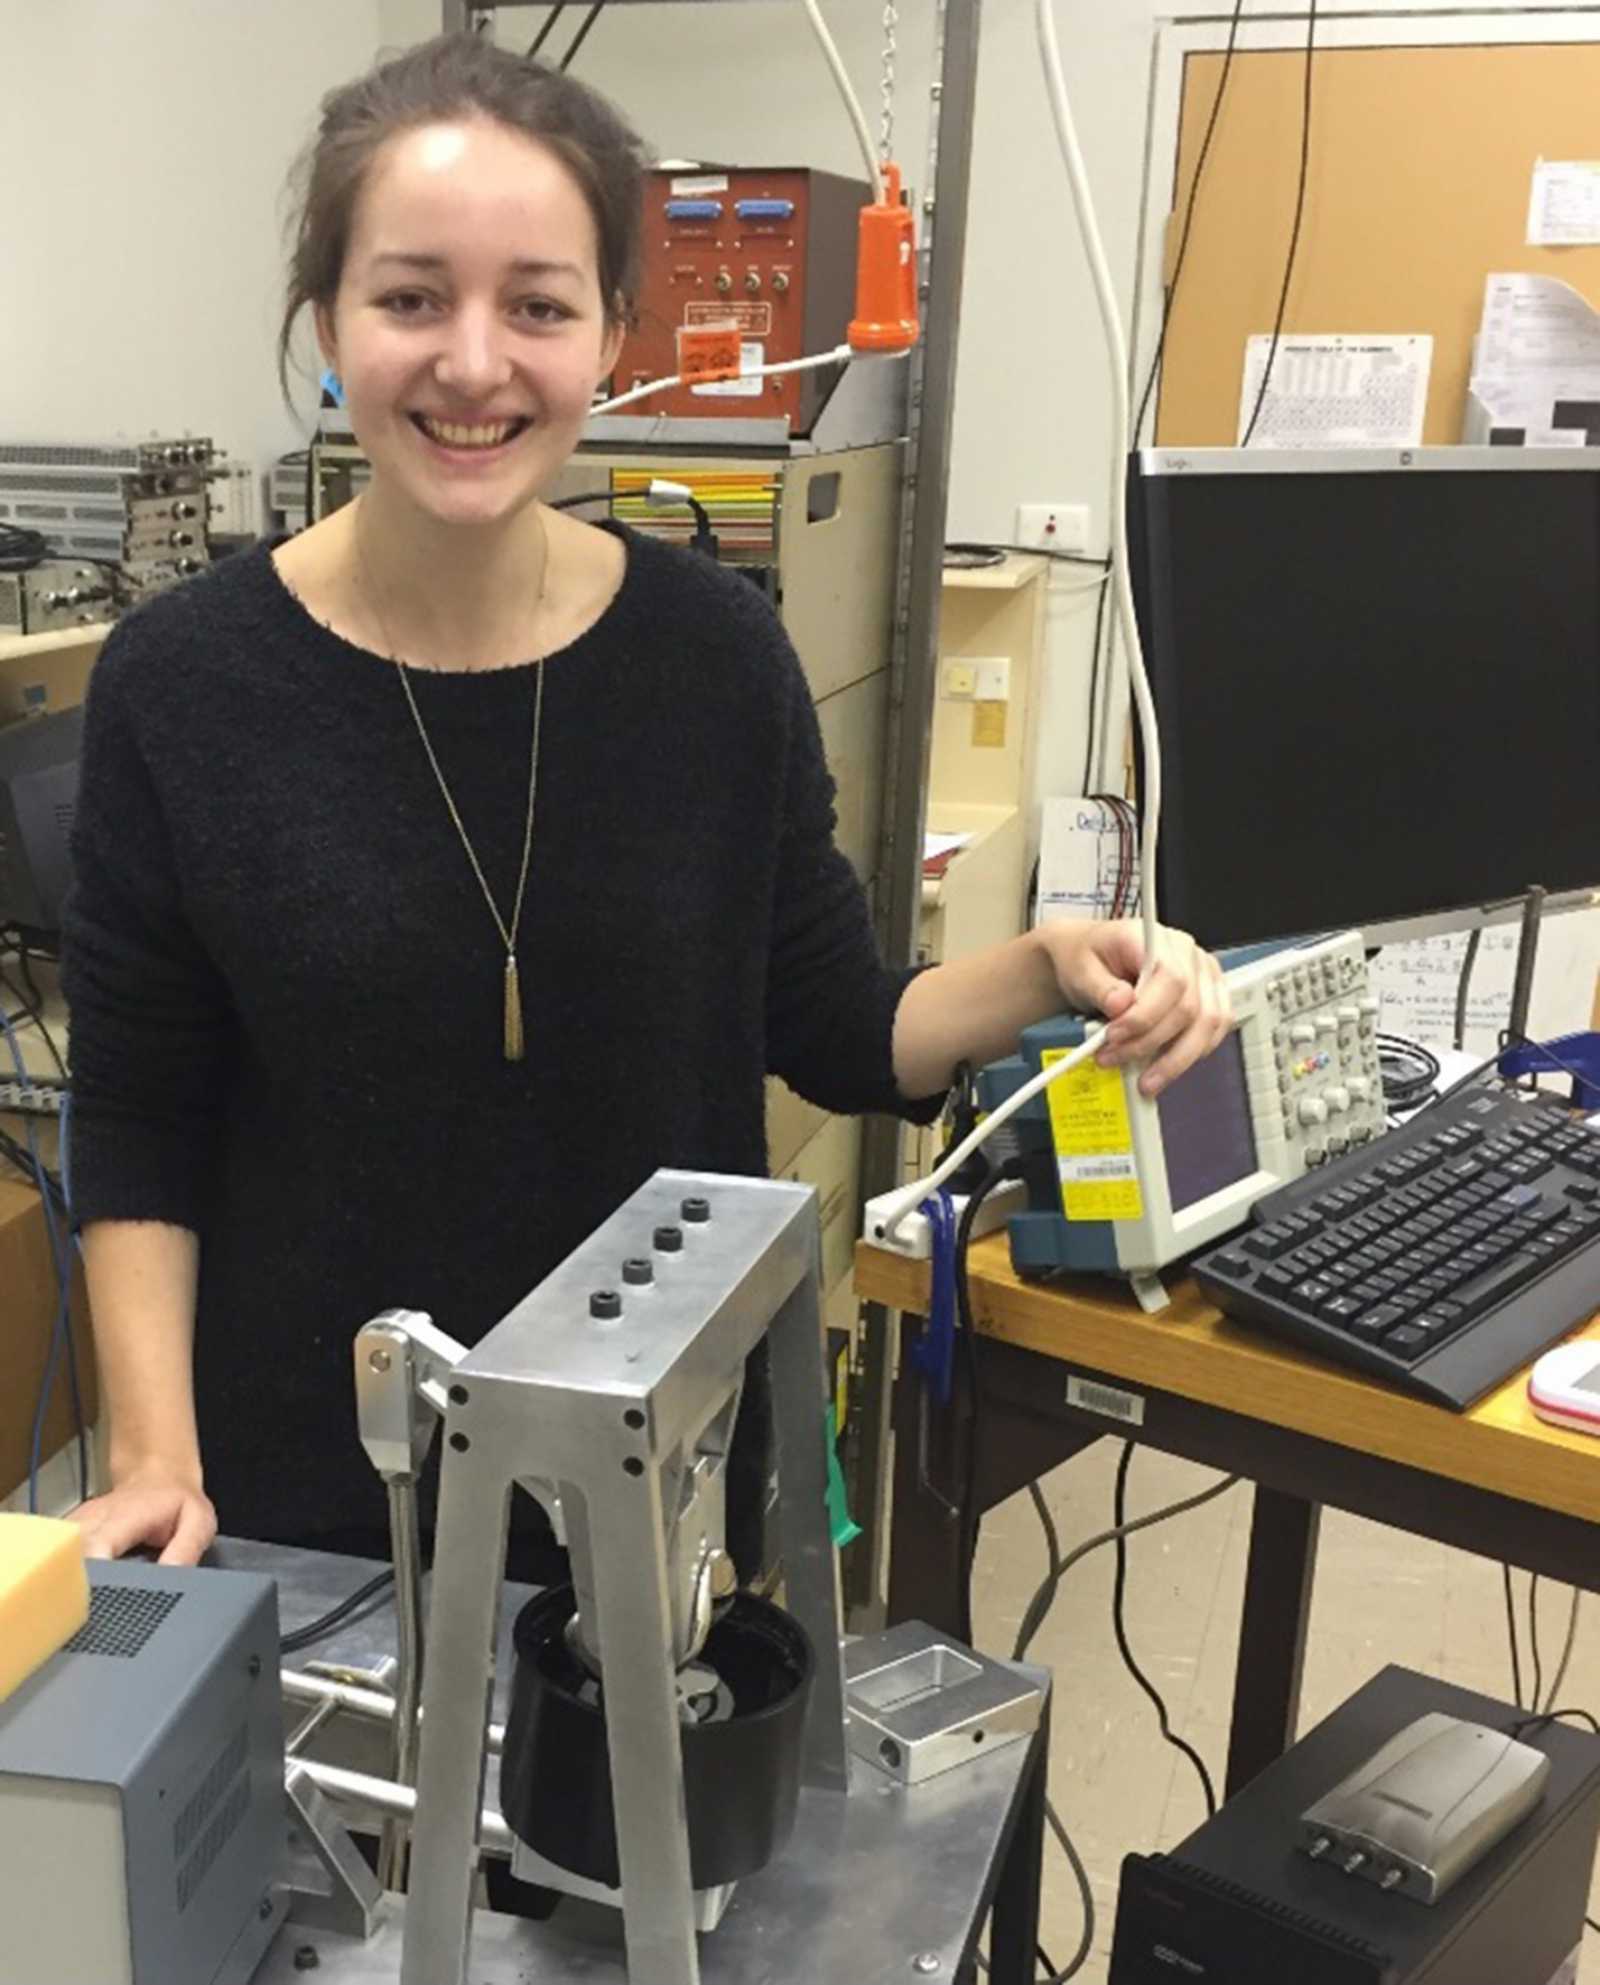 Laura Martens, Absolventin der FH Münster, hat für ihre Bachelorarbeit im Kniesimulator-Labor der University of New South Wales Canberra umfangreiche Messungen durchgeführt. (Foto: privat) 